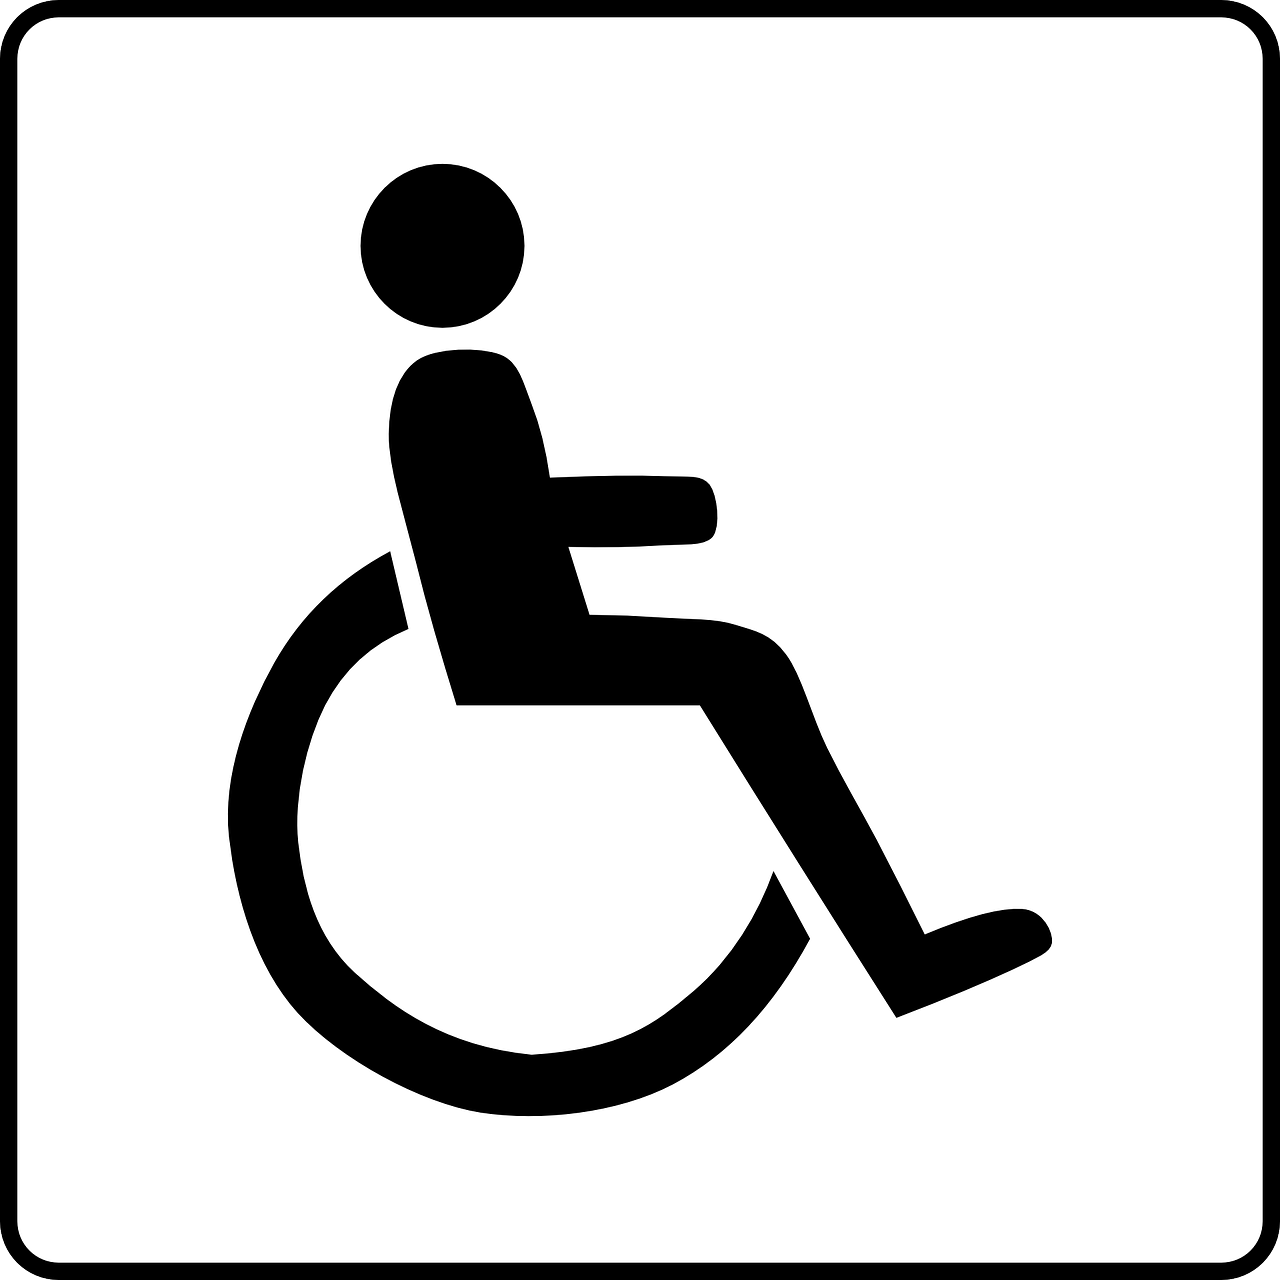 IBG Cronesteijn Gemiva-SVG Groep instelling gehandicaptenzorg verstandelijk gehandicapten ervaringen